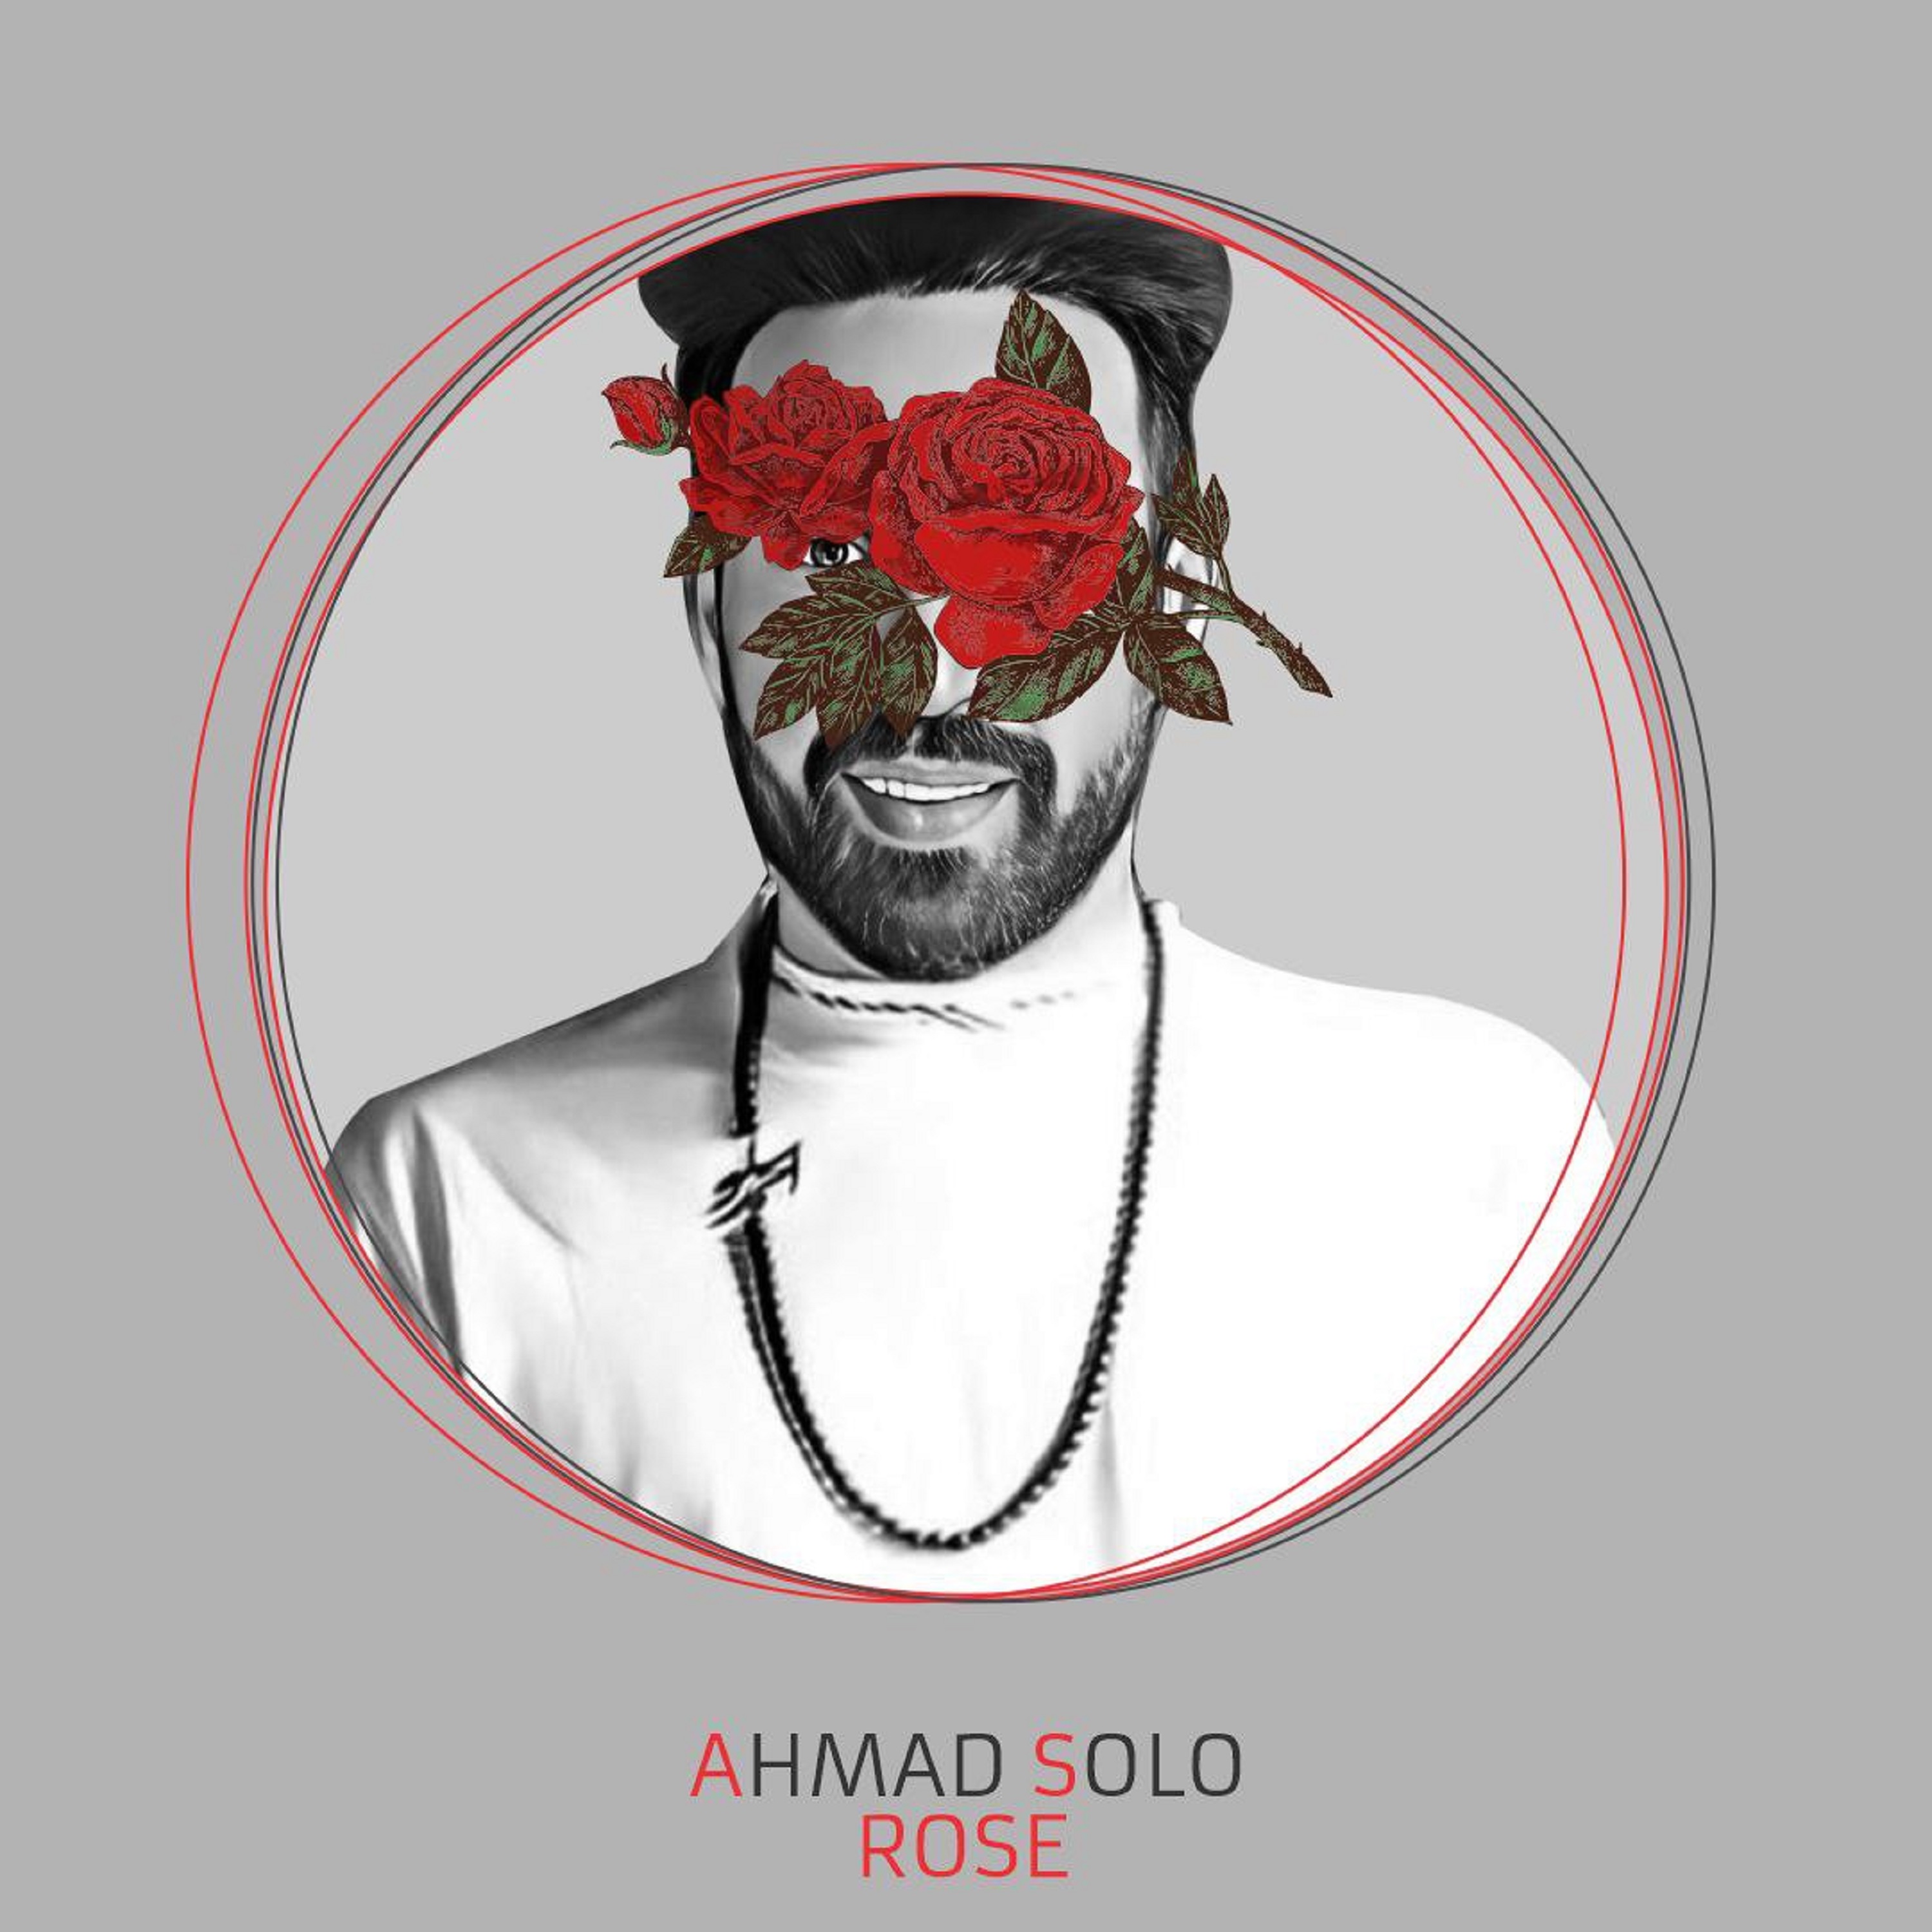  دانلود آهنگ جدید احمد سلو - رُز | Download New Music By Ahmad Solo - Rose